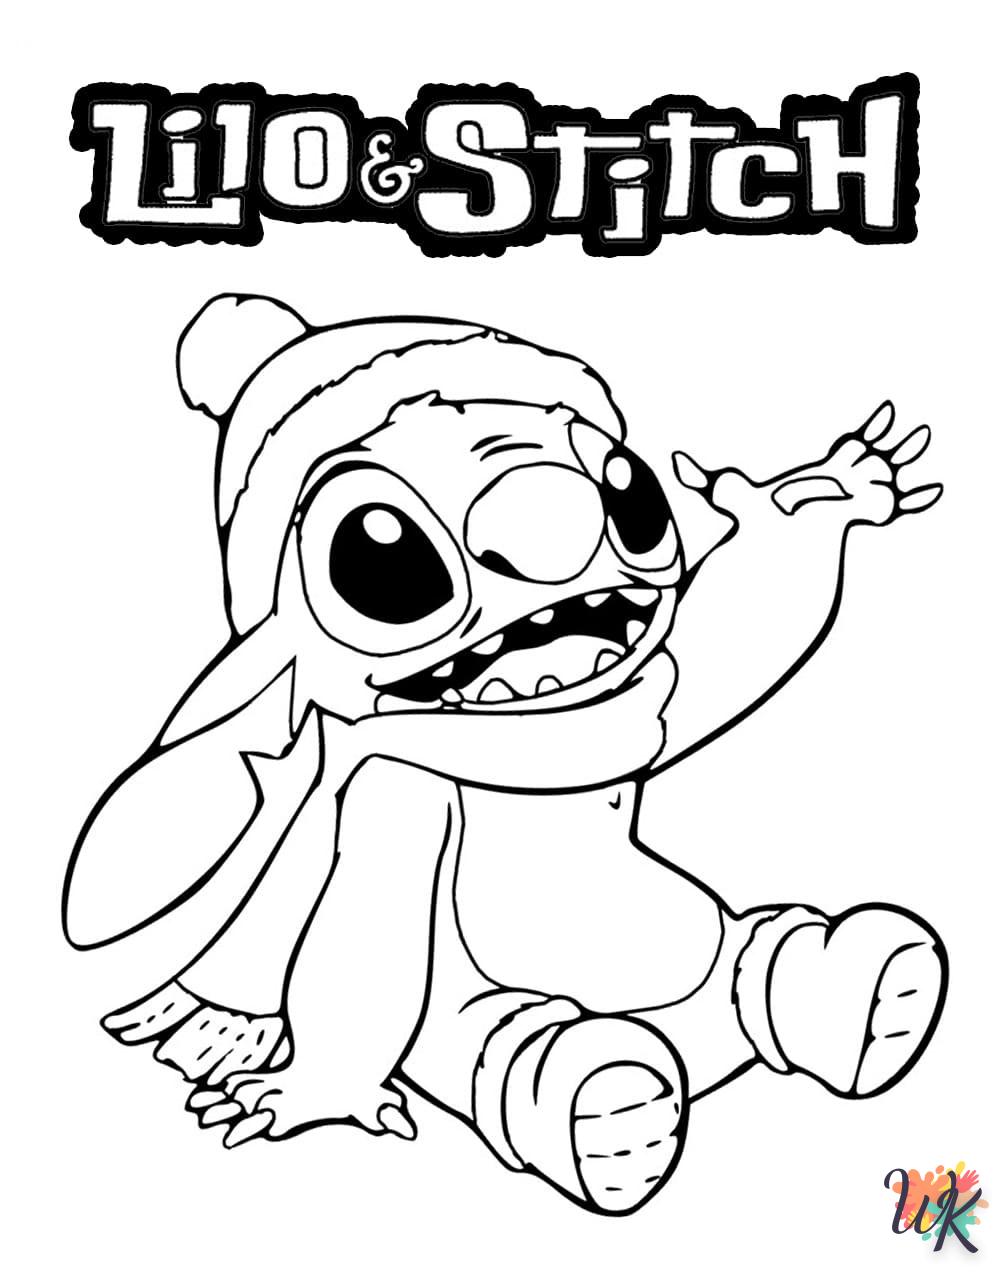 Dibujos para Colorear Lilo y Stitch 56